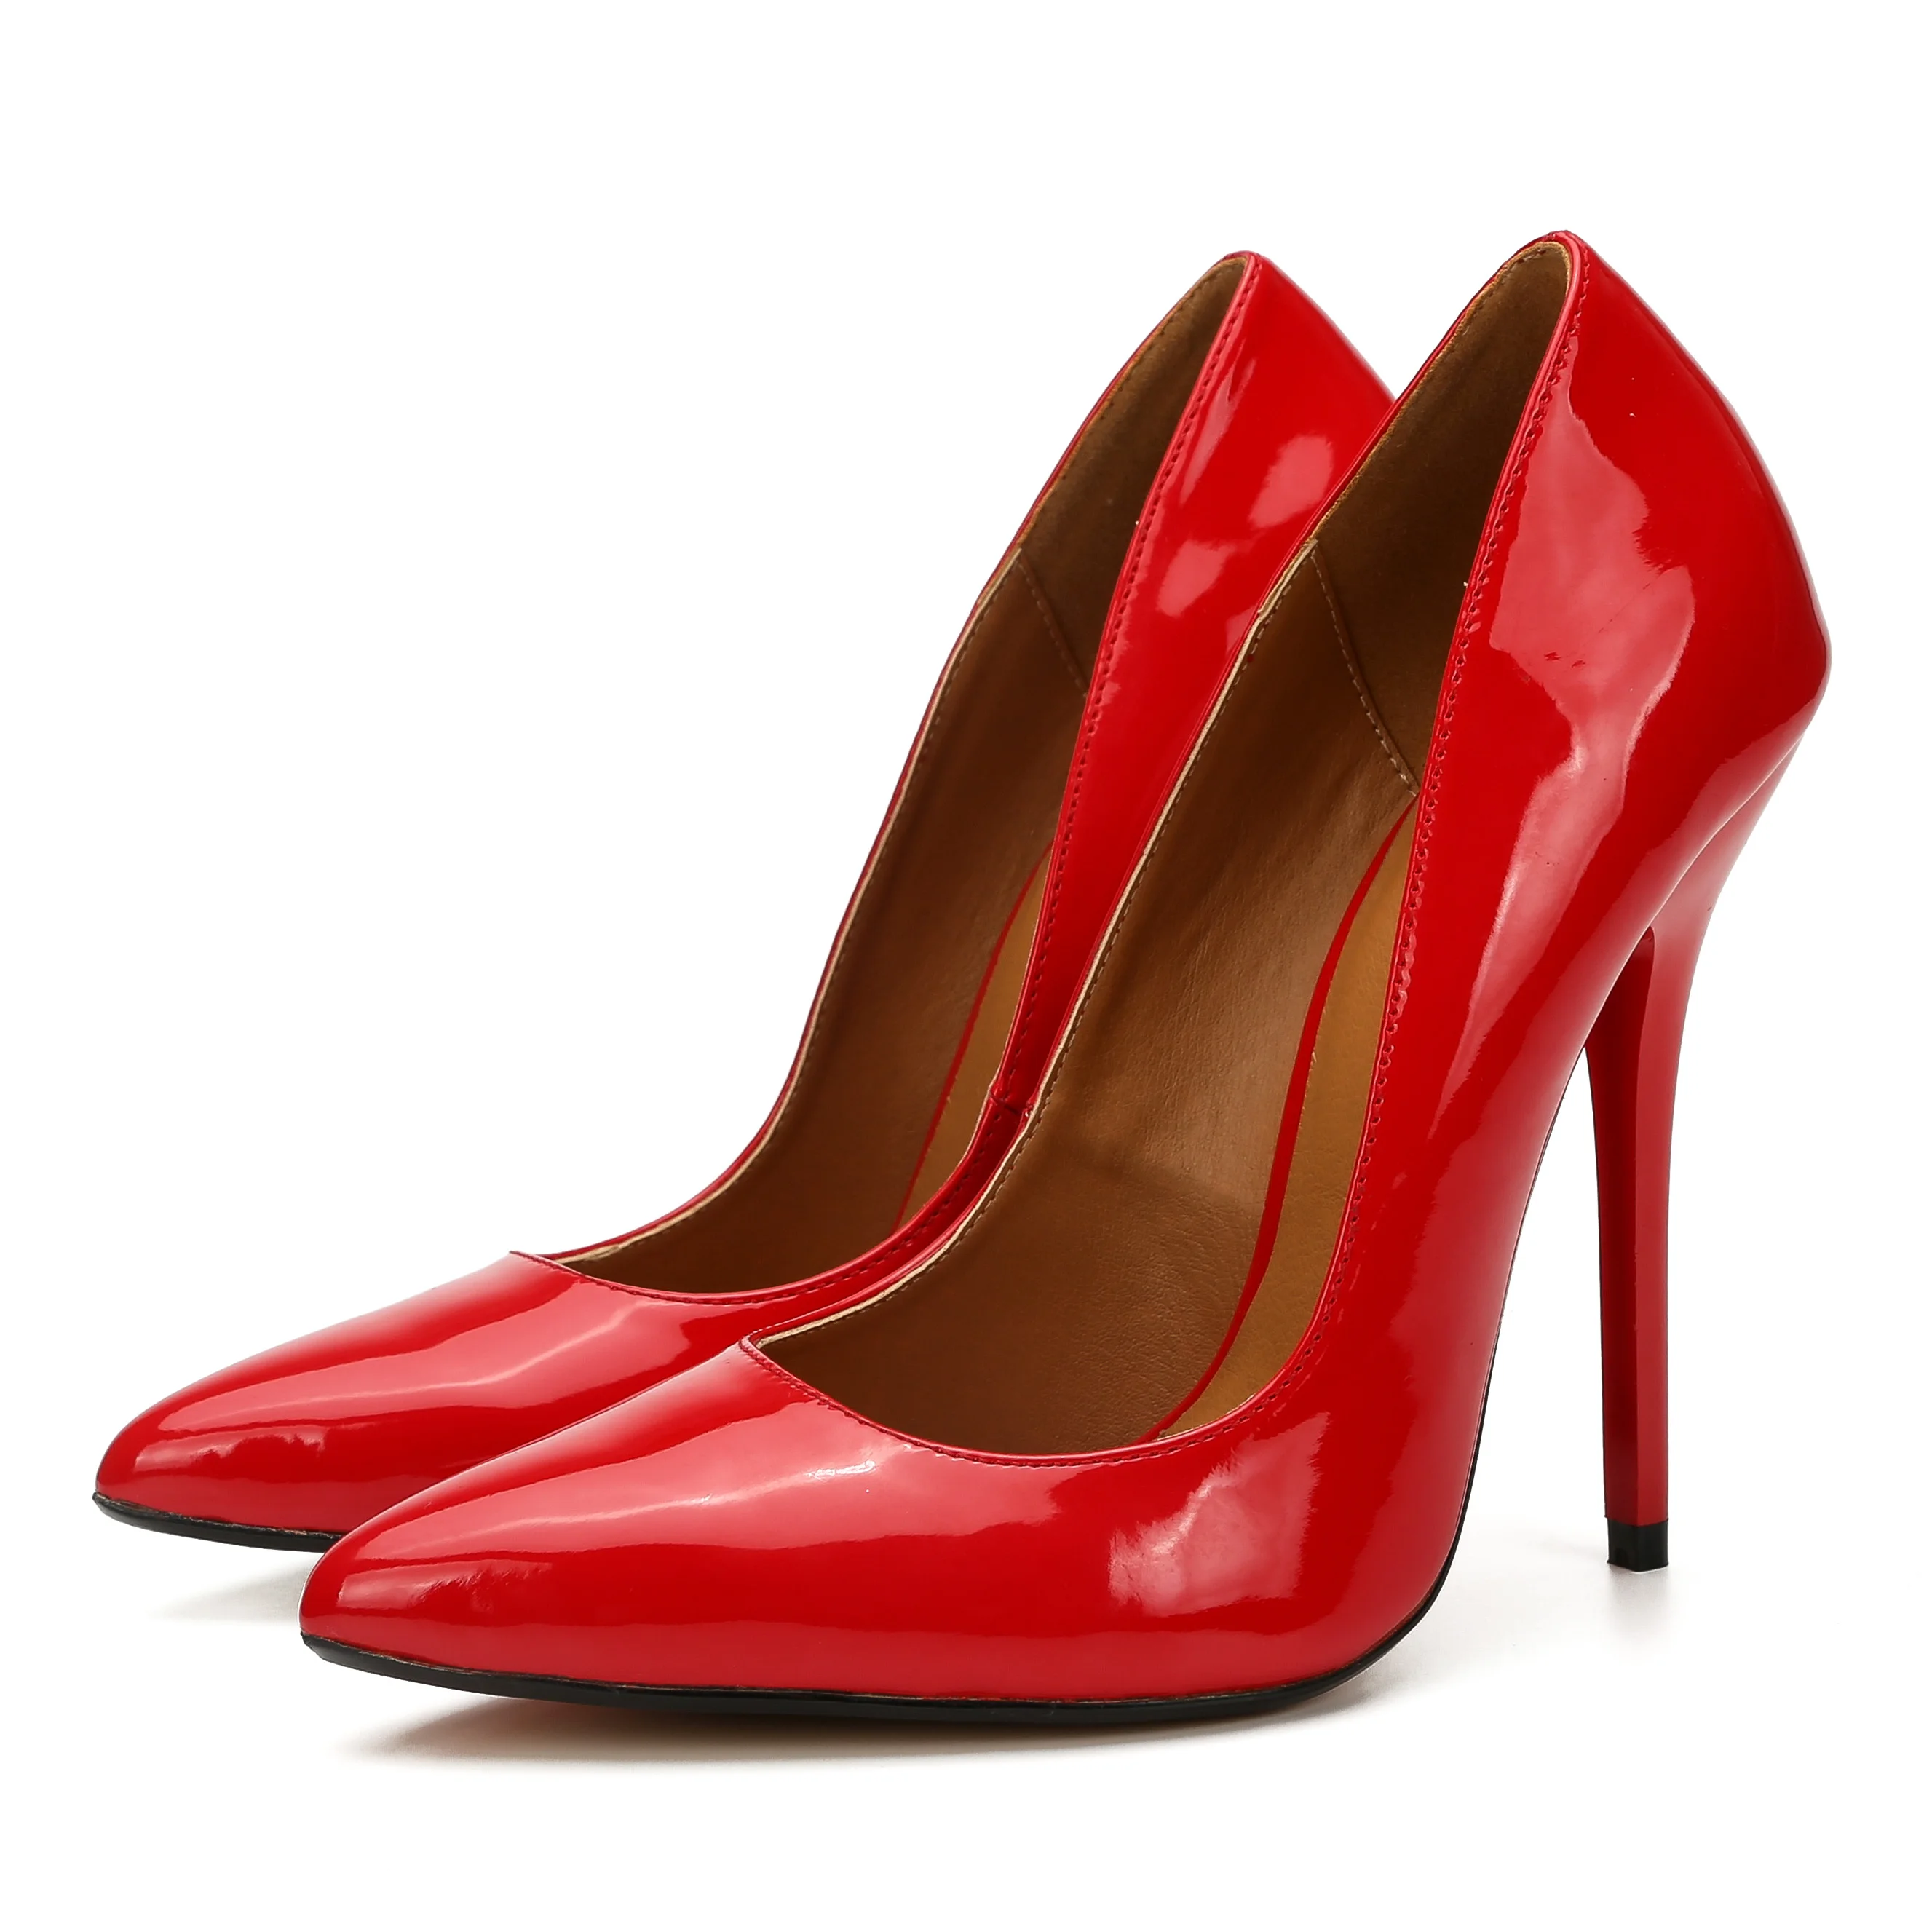 LLXF/Большие размеры: 40-45, 46, 47, 48, 49; стиль; женские красные модельные туфли на тонком металлическом каблуке 14 см; кожаные туфли-лодочки с острым носком для костюмированной вечеринки